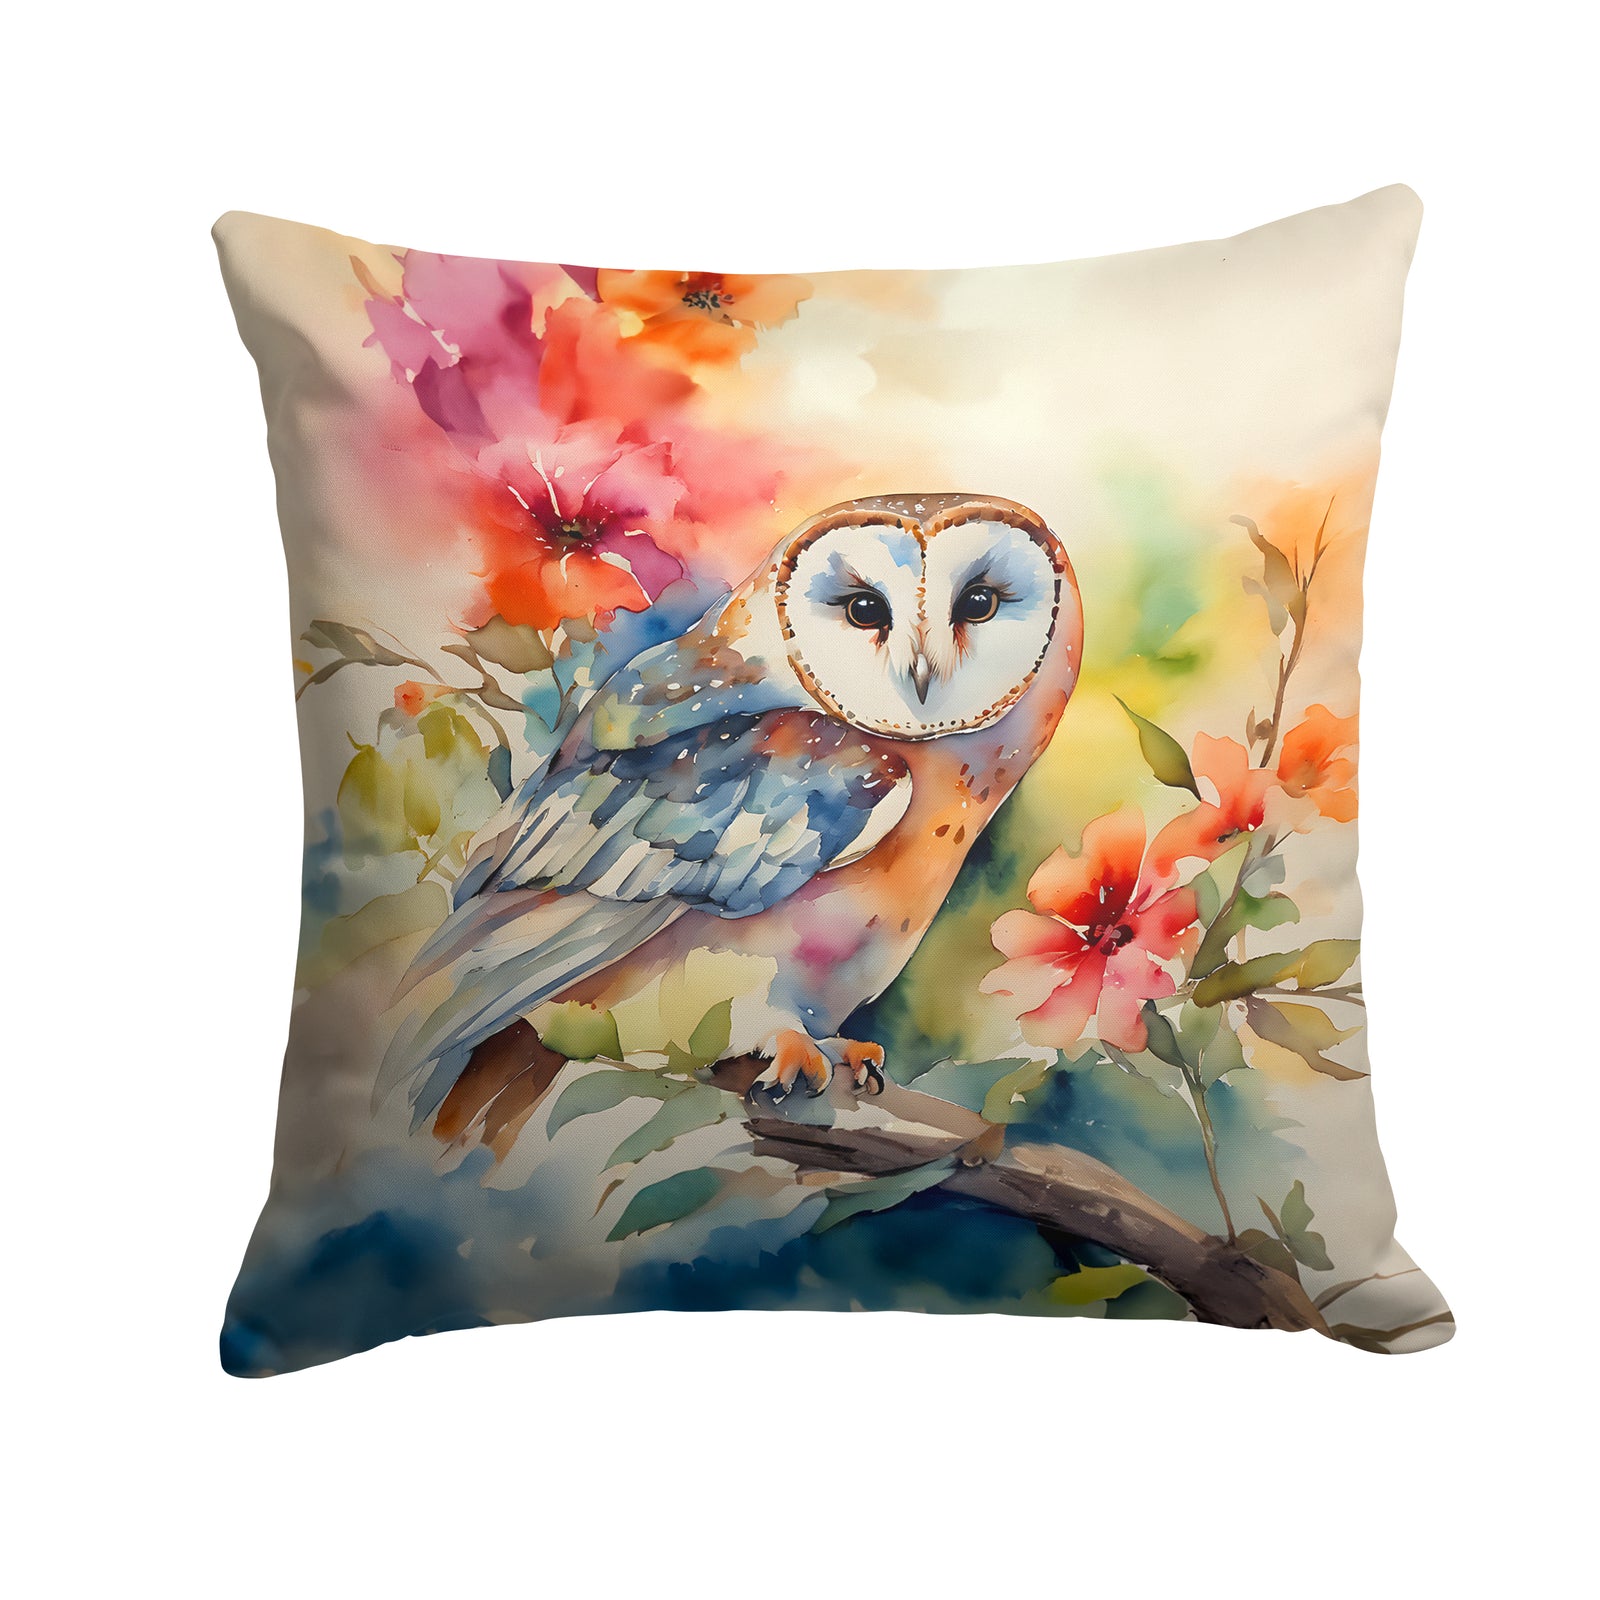 Buy this Barn Owl Throw Pillow